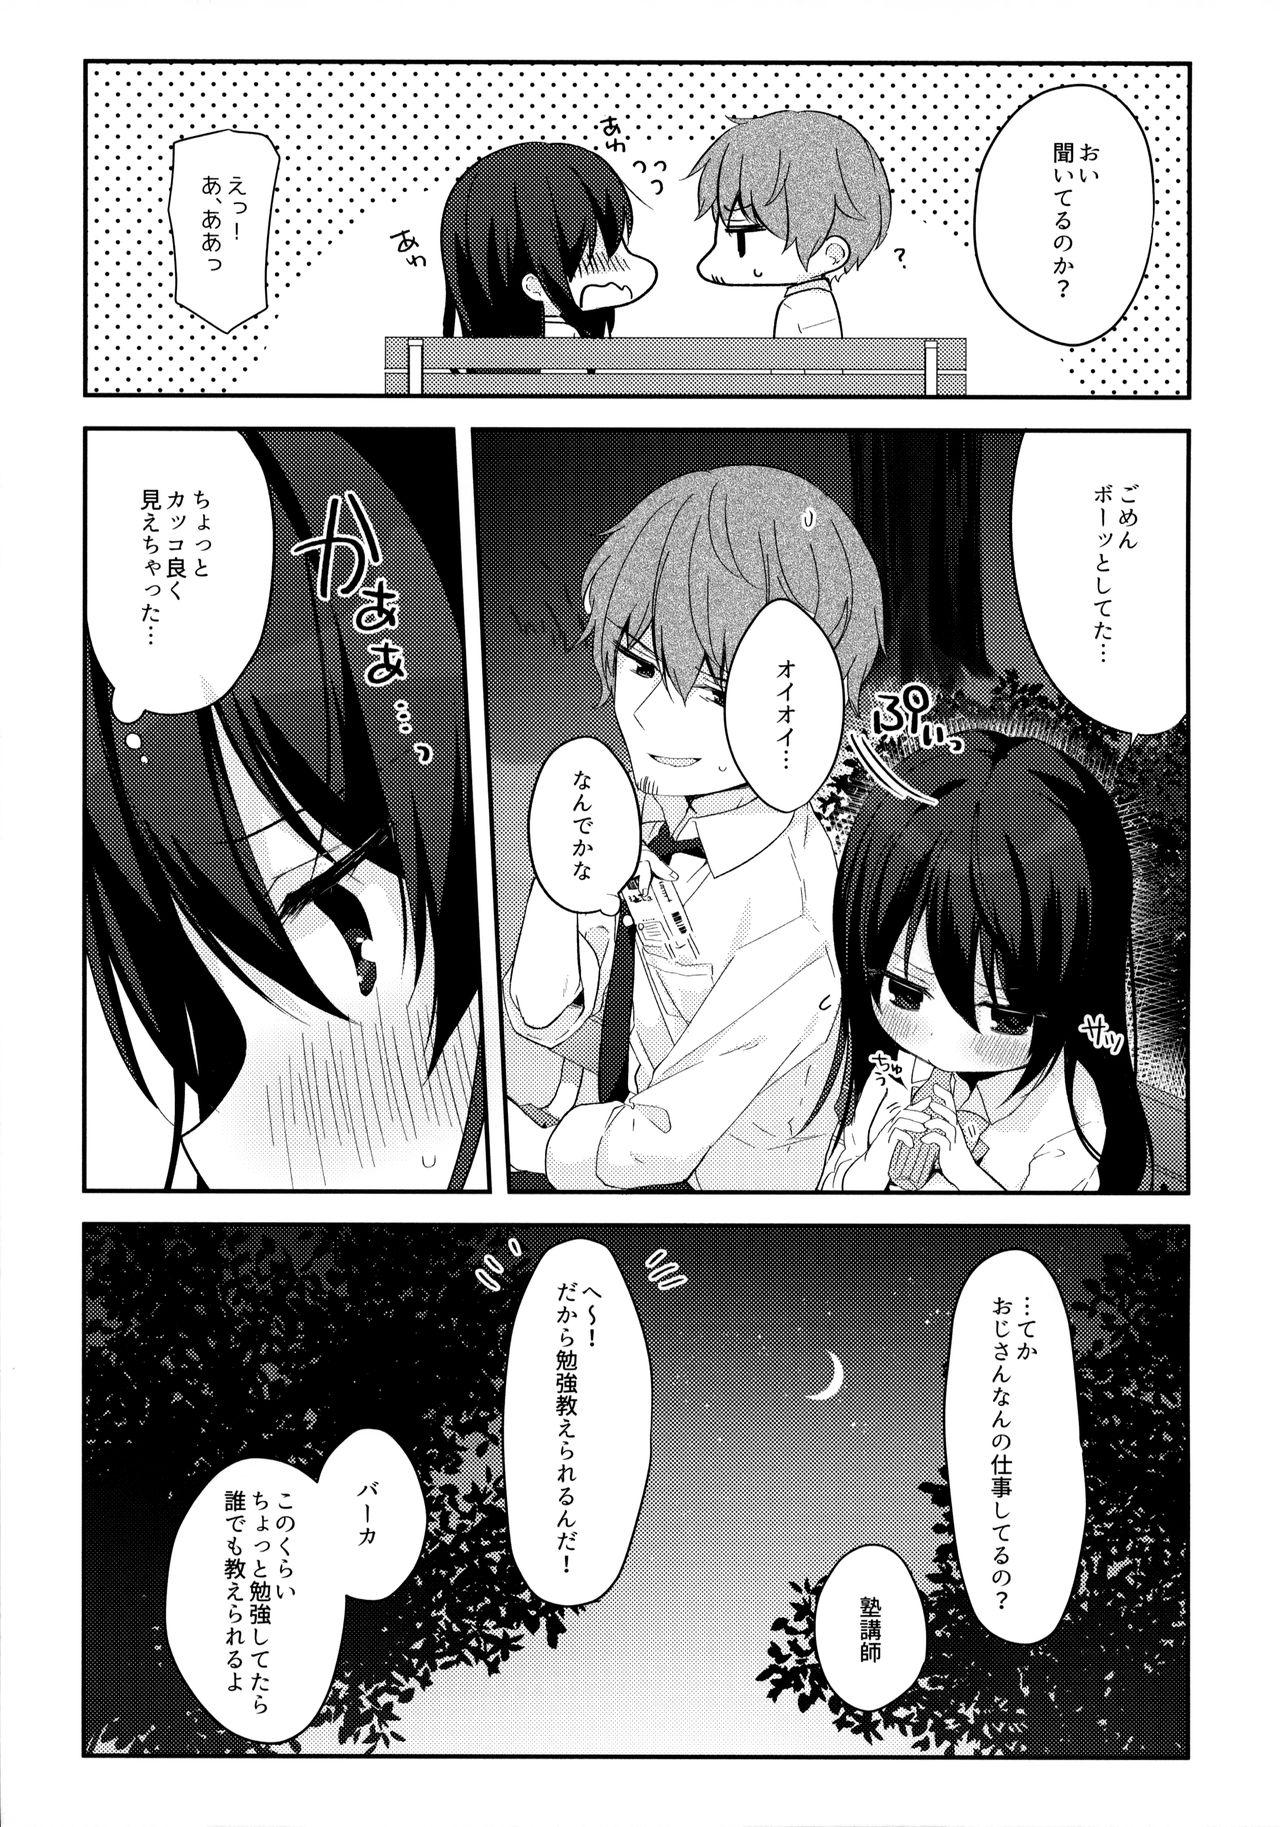 Gaybukkake 12-sai Sa no Himitsu Renai - Original Caseiro - Page 8